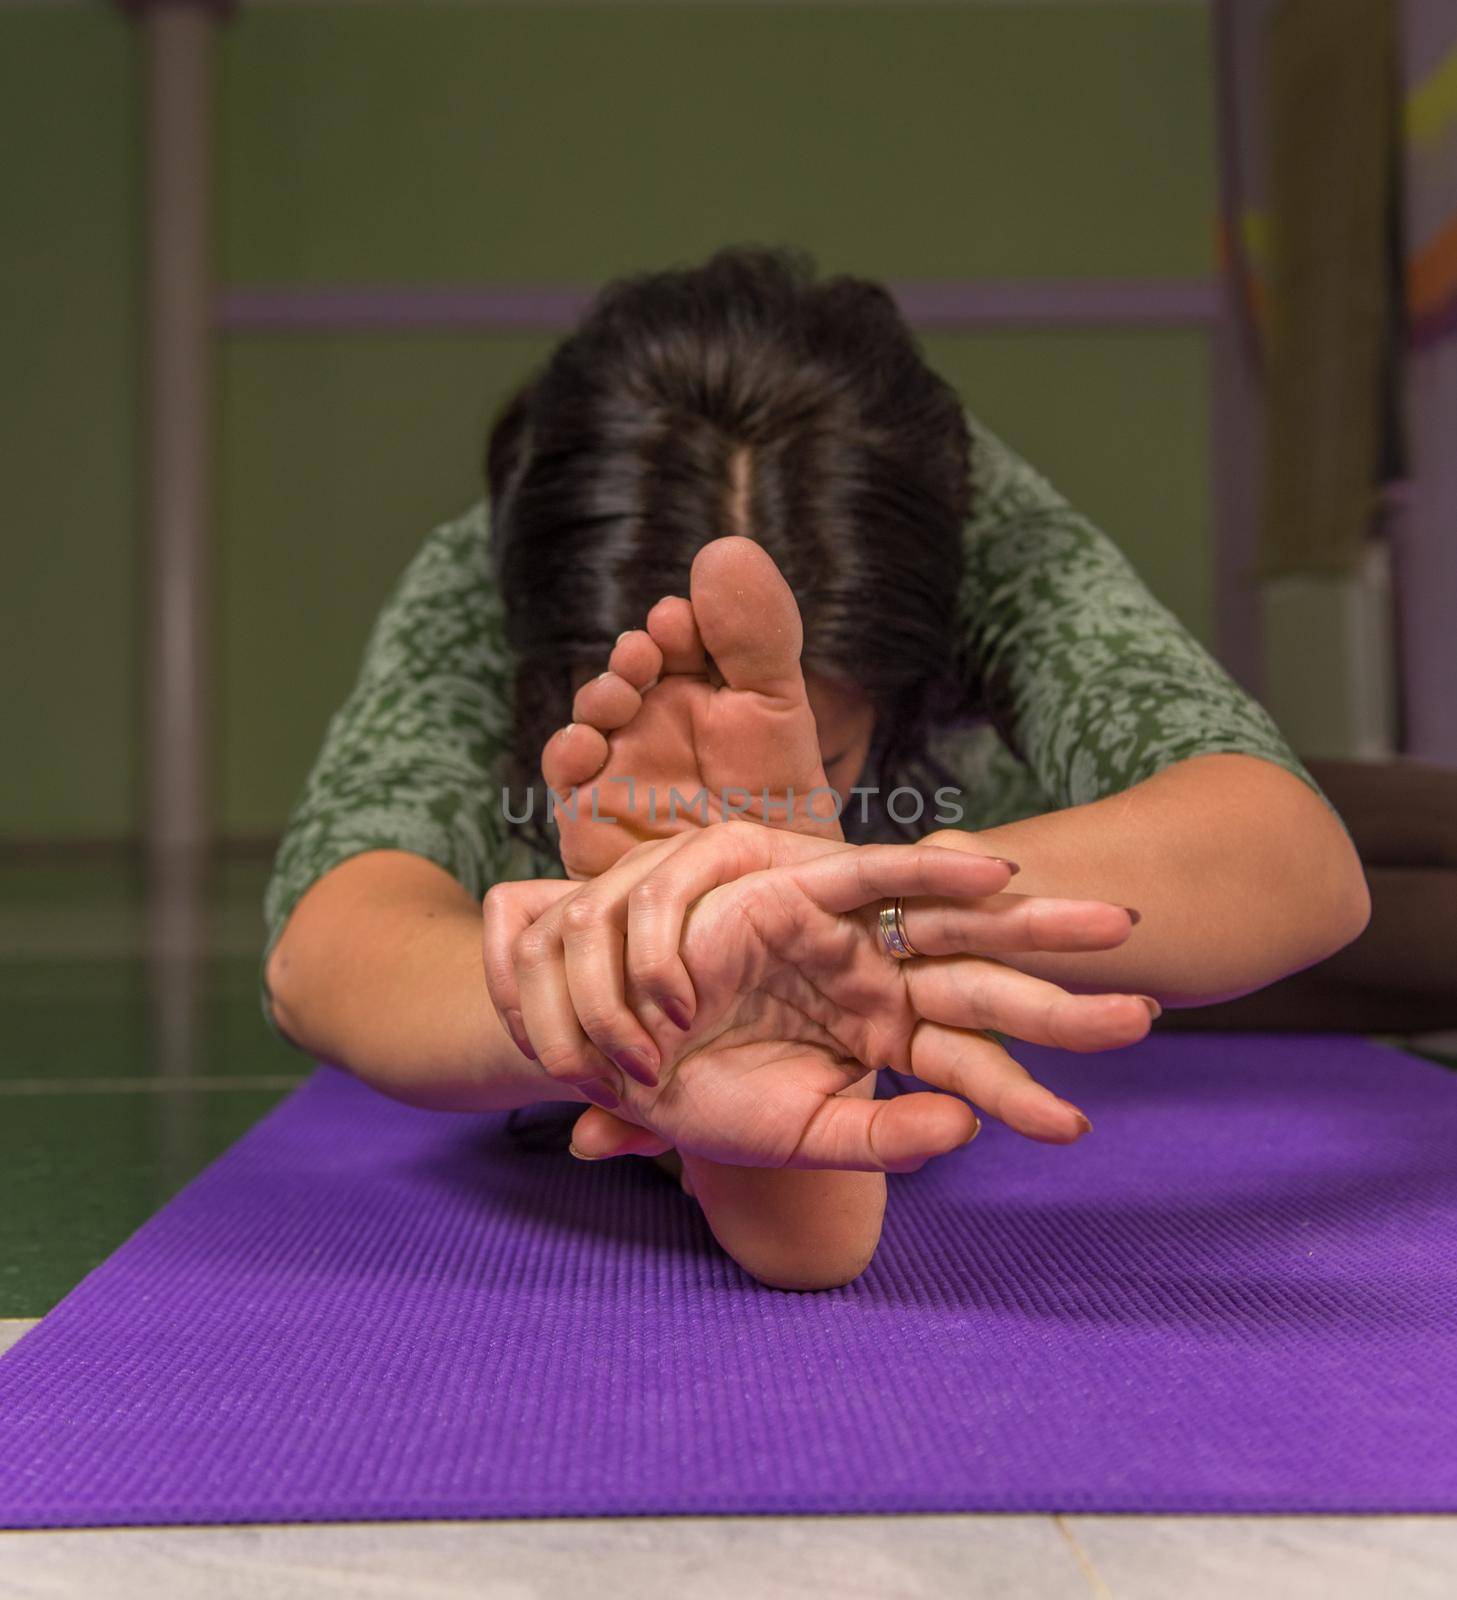 Yogi presenting yoga in the gym by Proff